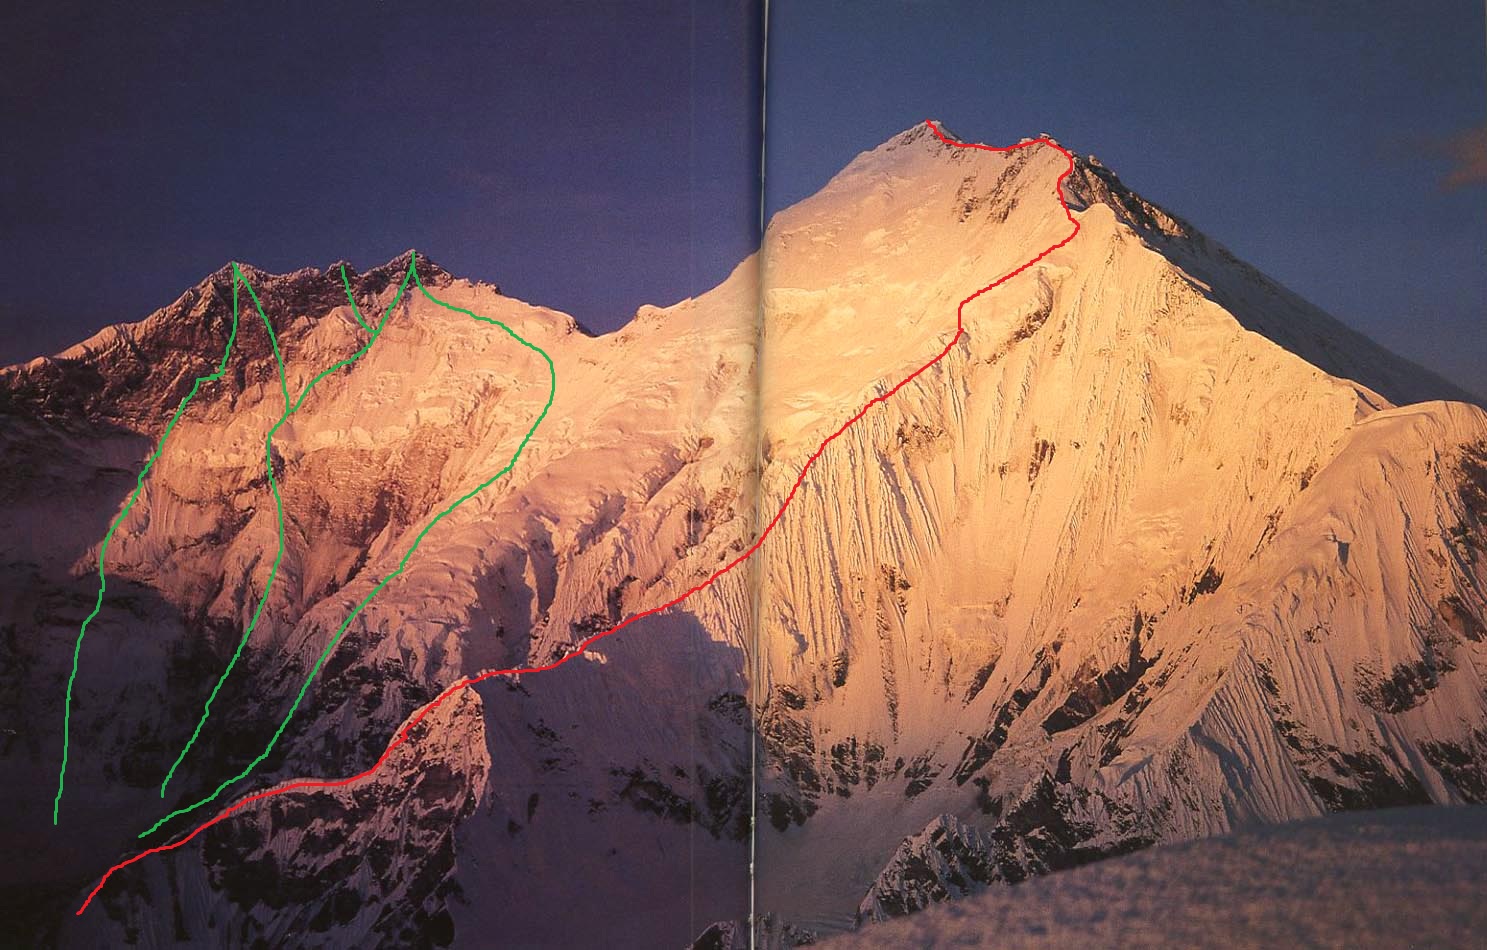 Восточная стена Лхоцзе (East Face Lhotse). Зеленым цветом обозначены возможные маршруты восхождения на Лхоцзе. Красная линия - маршрут 1988 года на Эверест